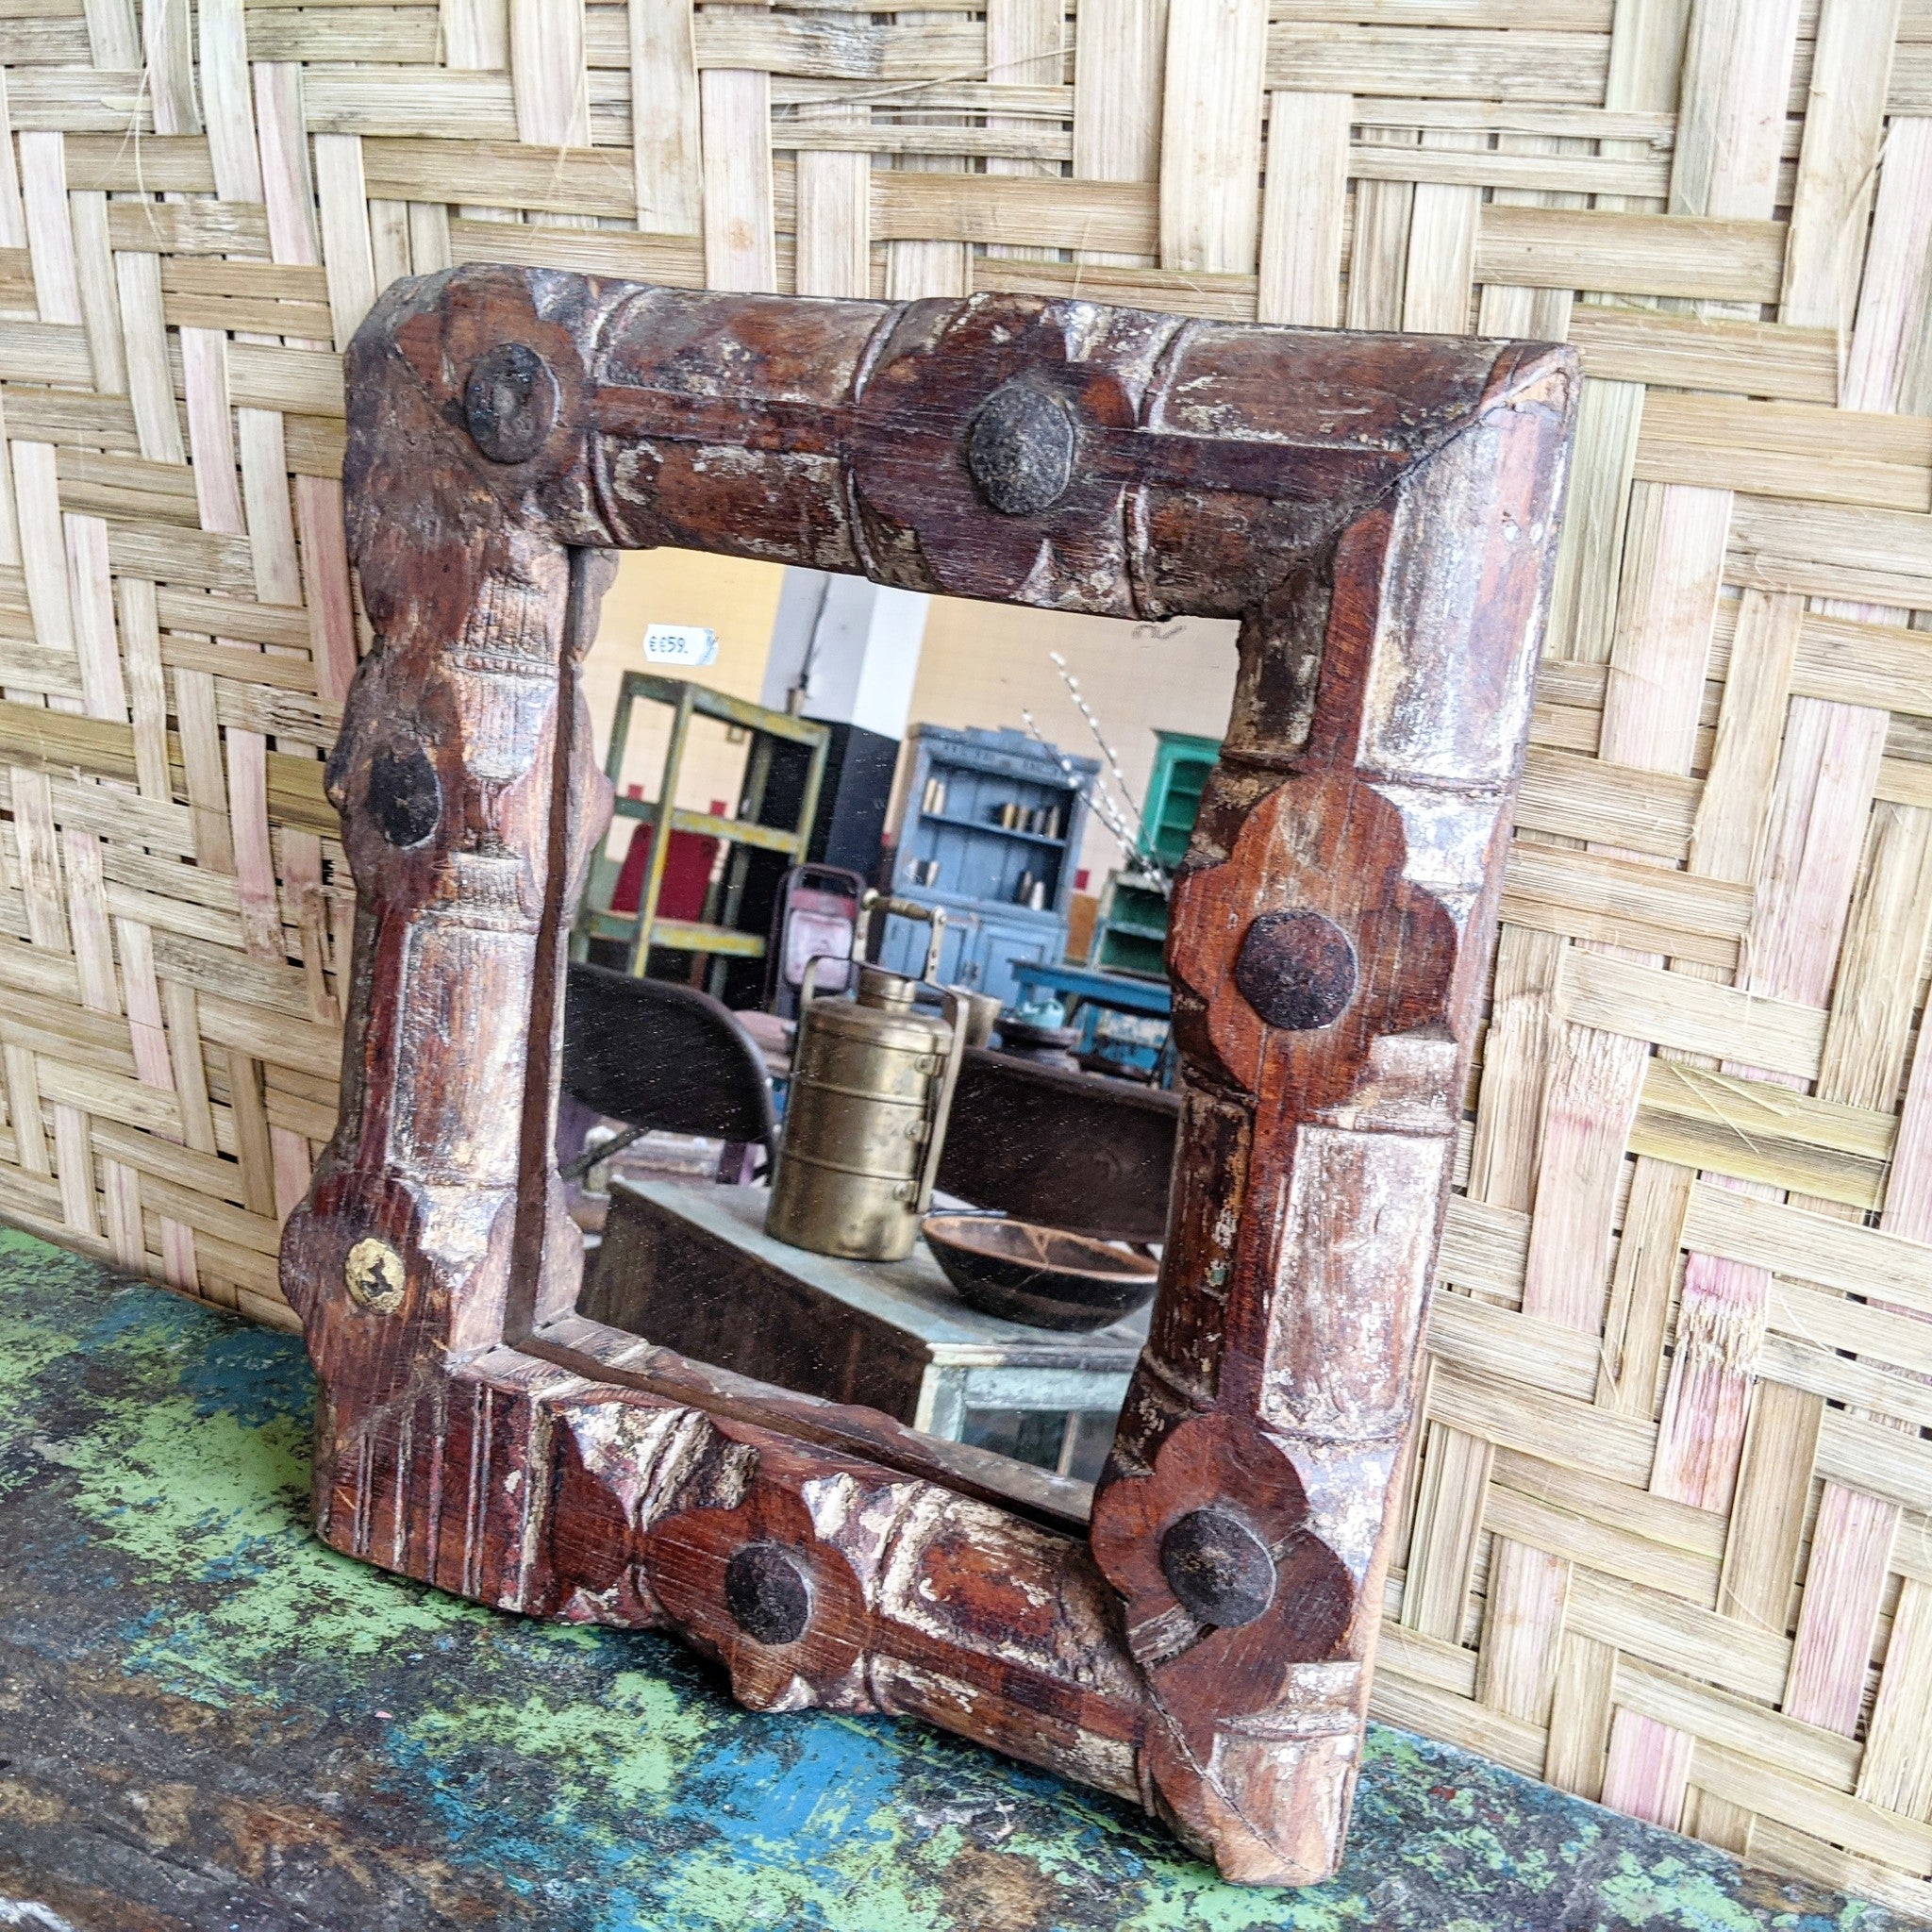 Mirror door frame #1